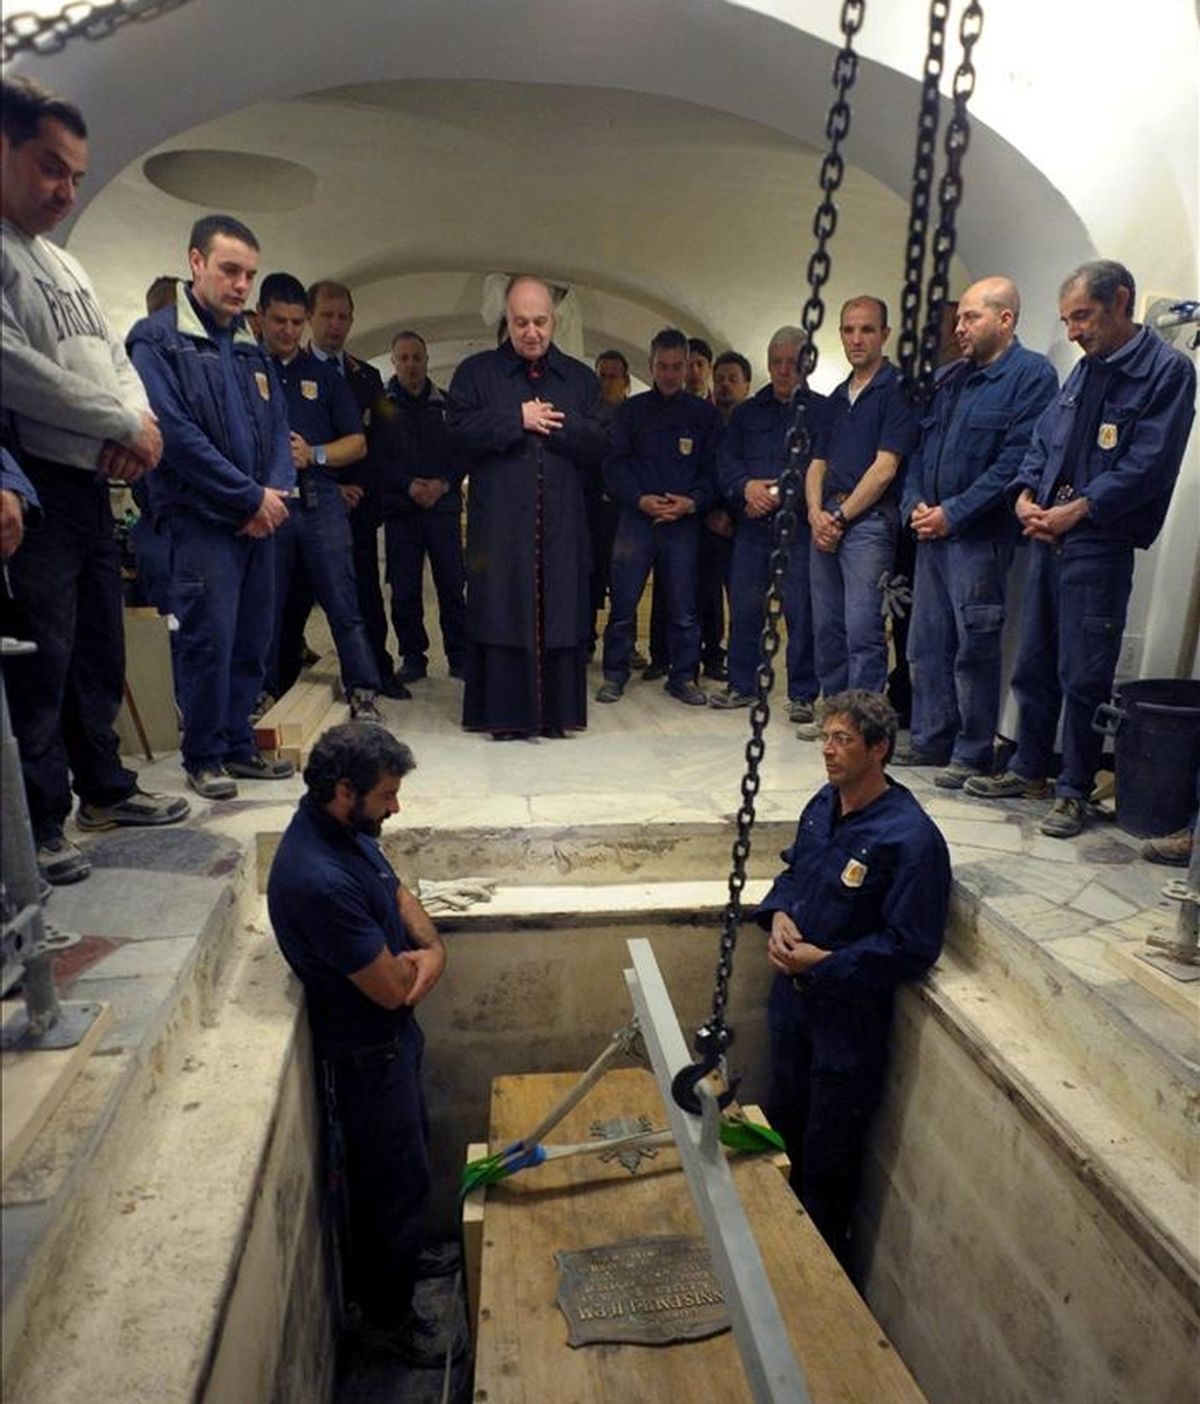 El féretro con el cuerpo del Papa Juan Pablo II, exhumado en el Vaticano antes de su beatificación el próximo 1 de mayo de 2011. EFE